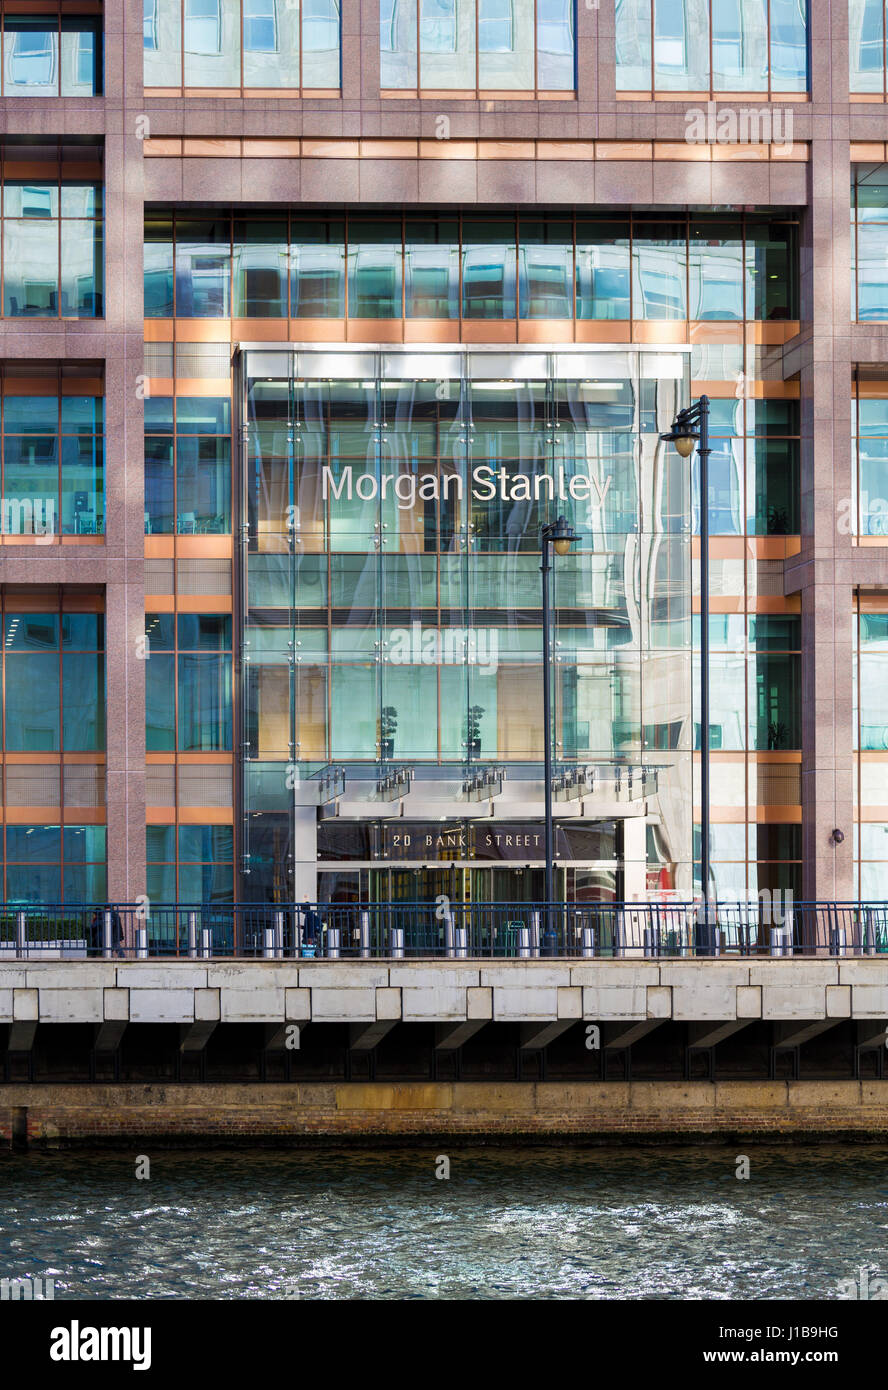 Morgan Stanley Bank services financiers de l'entrée de leur immeuble de bureaux à Canary Wharf, les Docklands, Londres, Angleterre Banque D'Images